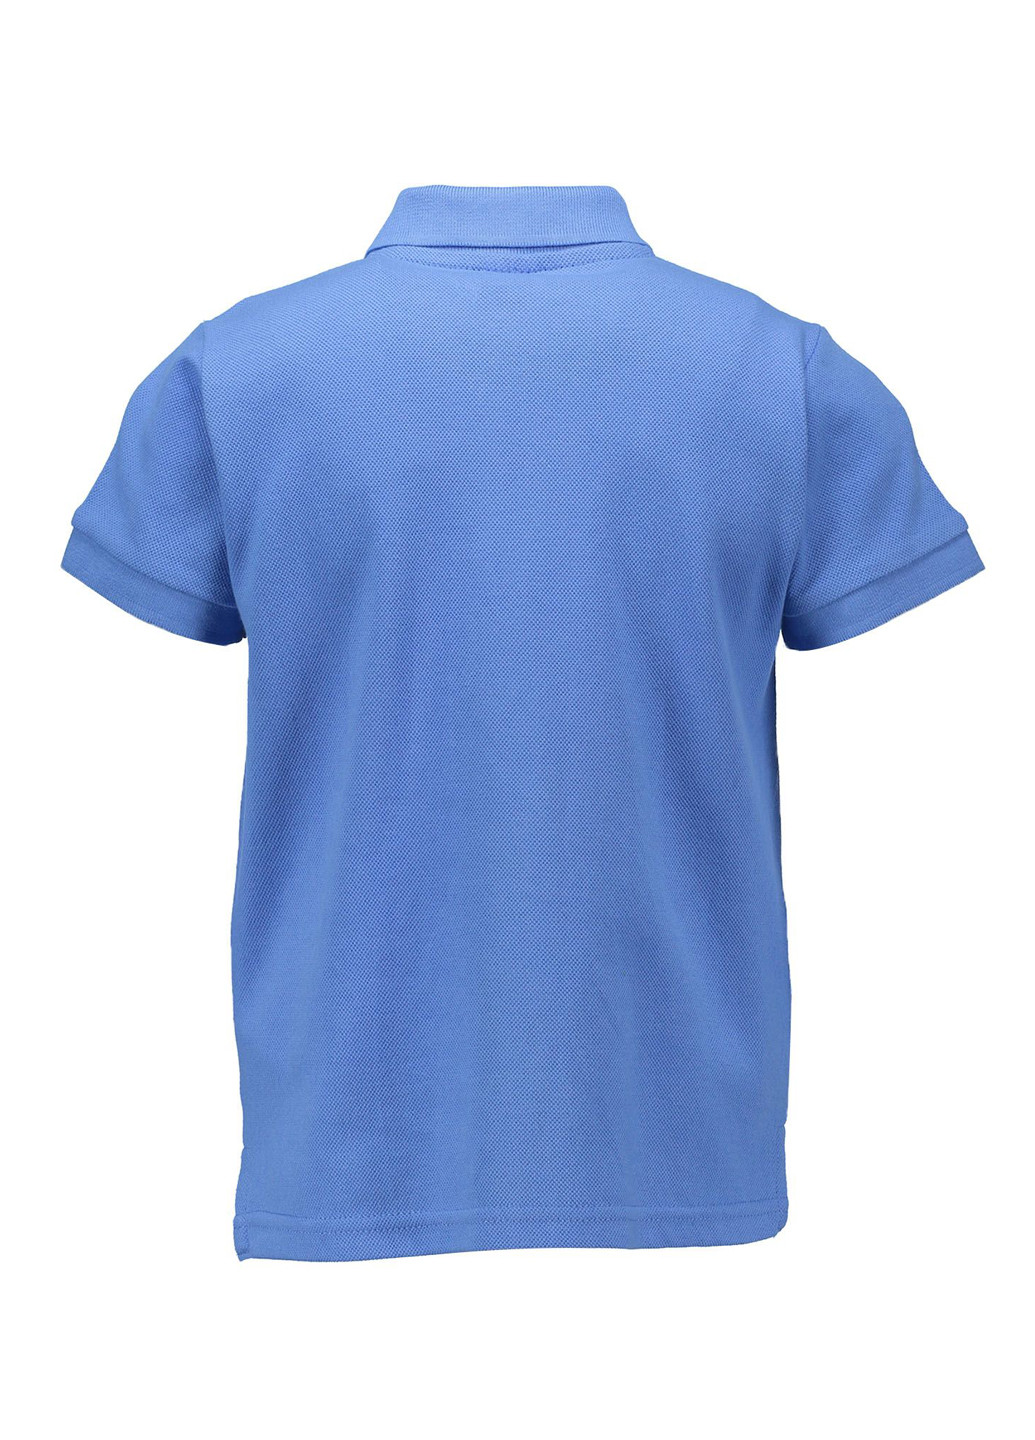 Синяя детская футболка-поло для мальчика Piazza Italia